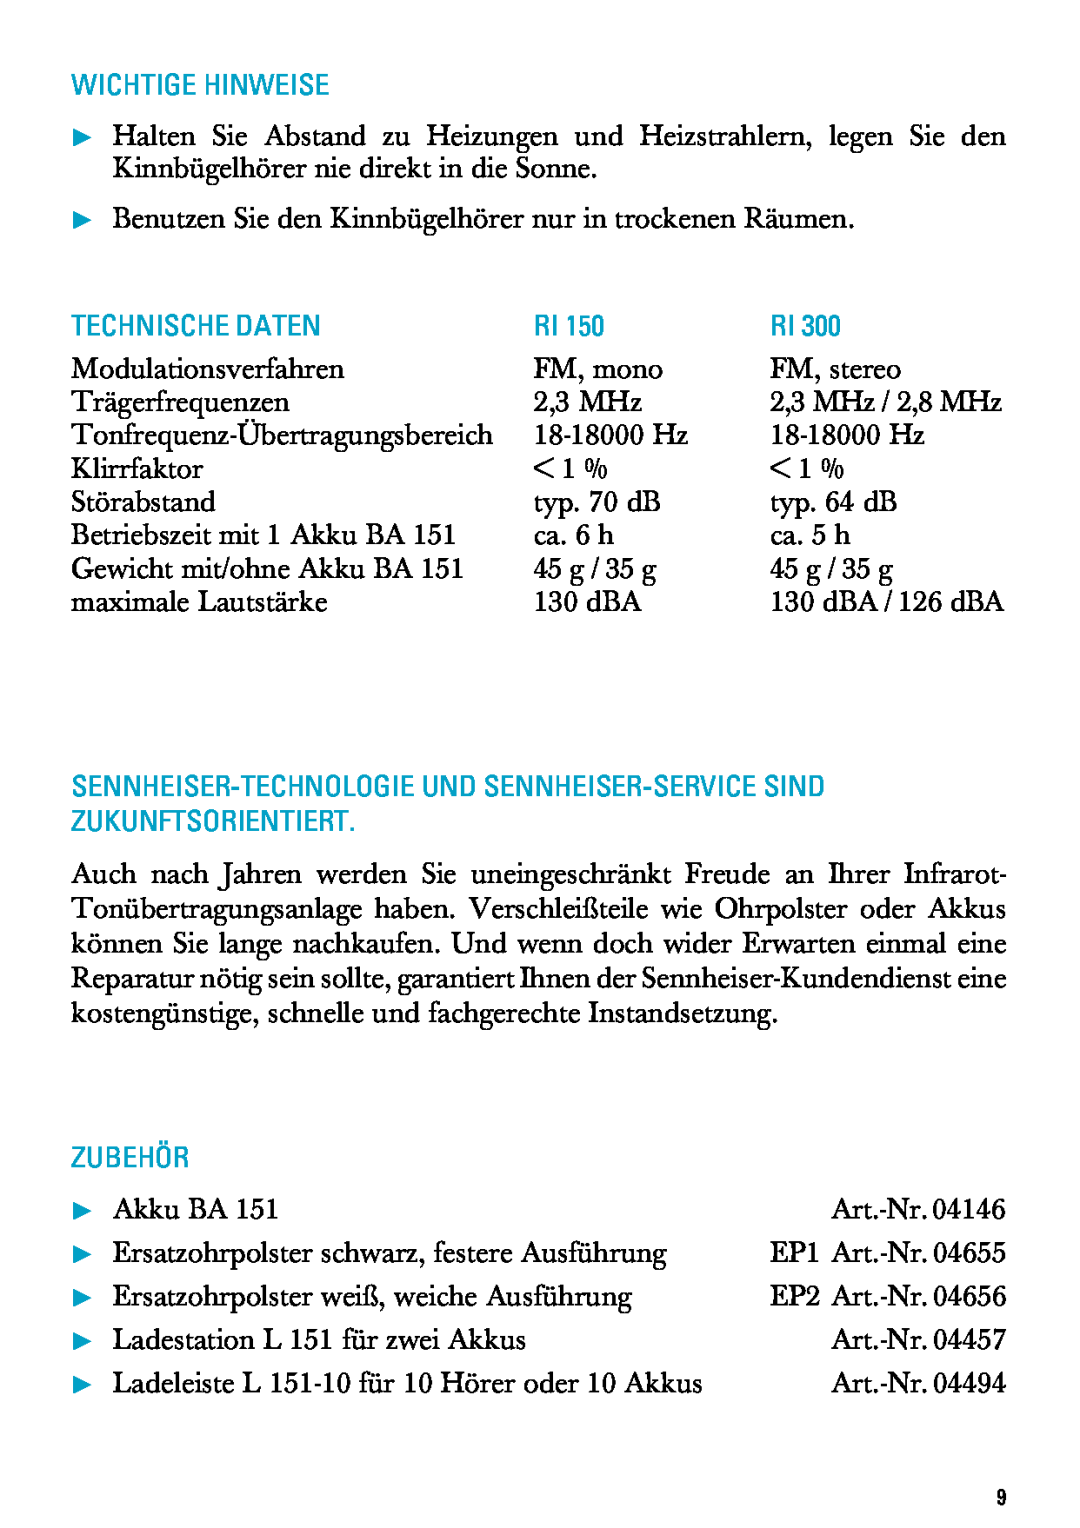 Sennheiser RI 300 manual Wichtige Hinweise, Technische Daten, Zubehör, Modulationsverfahren 